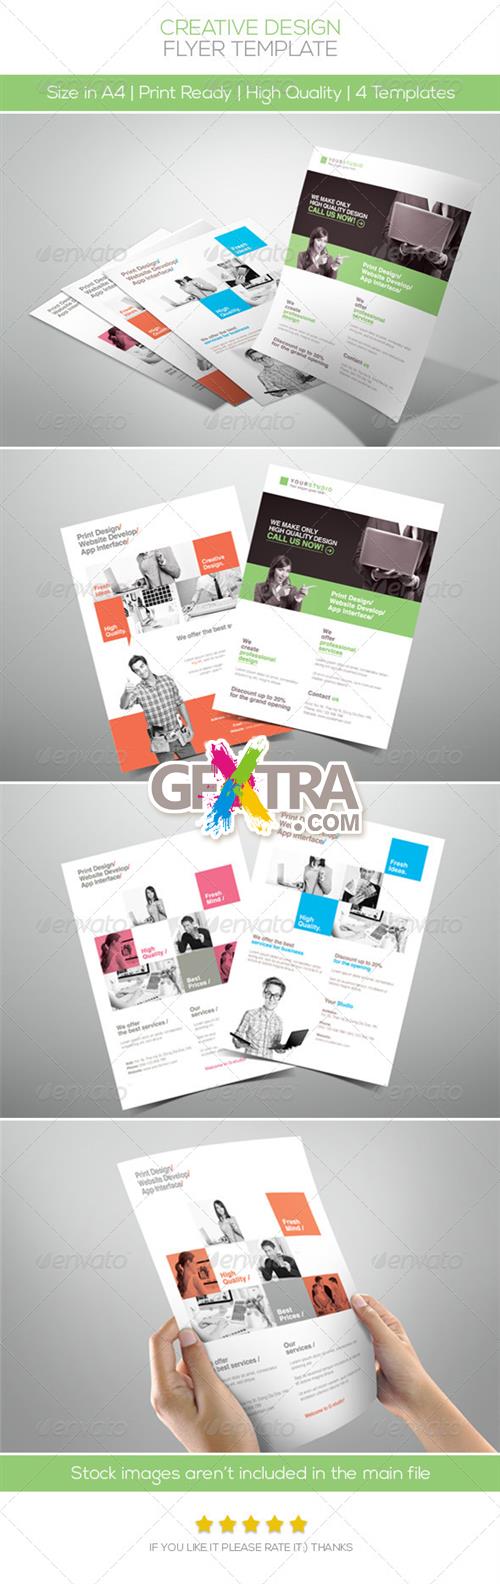 GraphicRiver - Creative Design Company Flyer